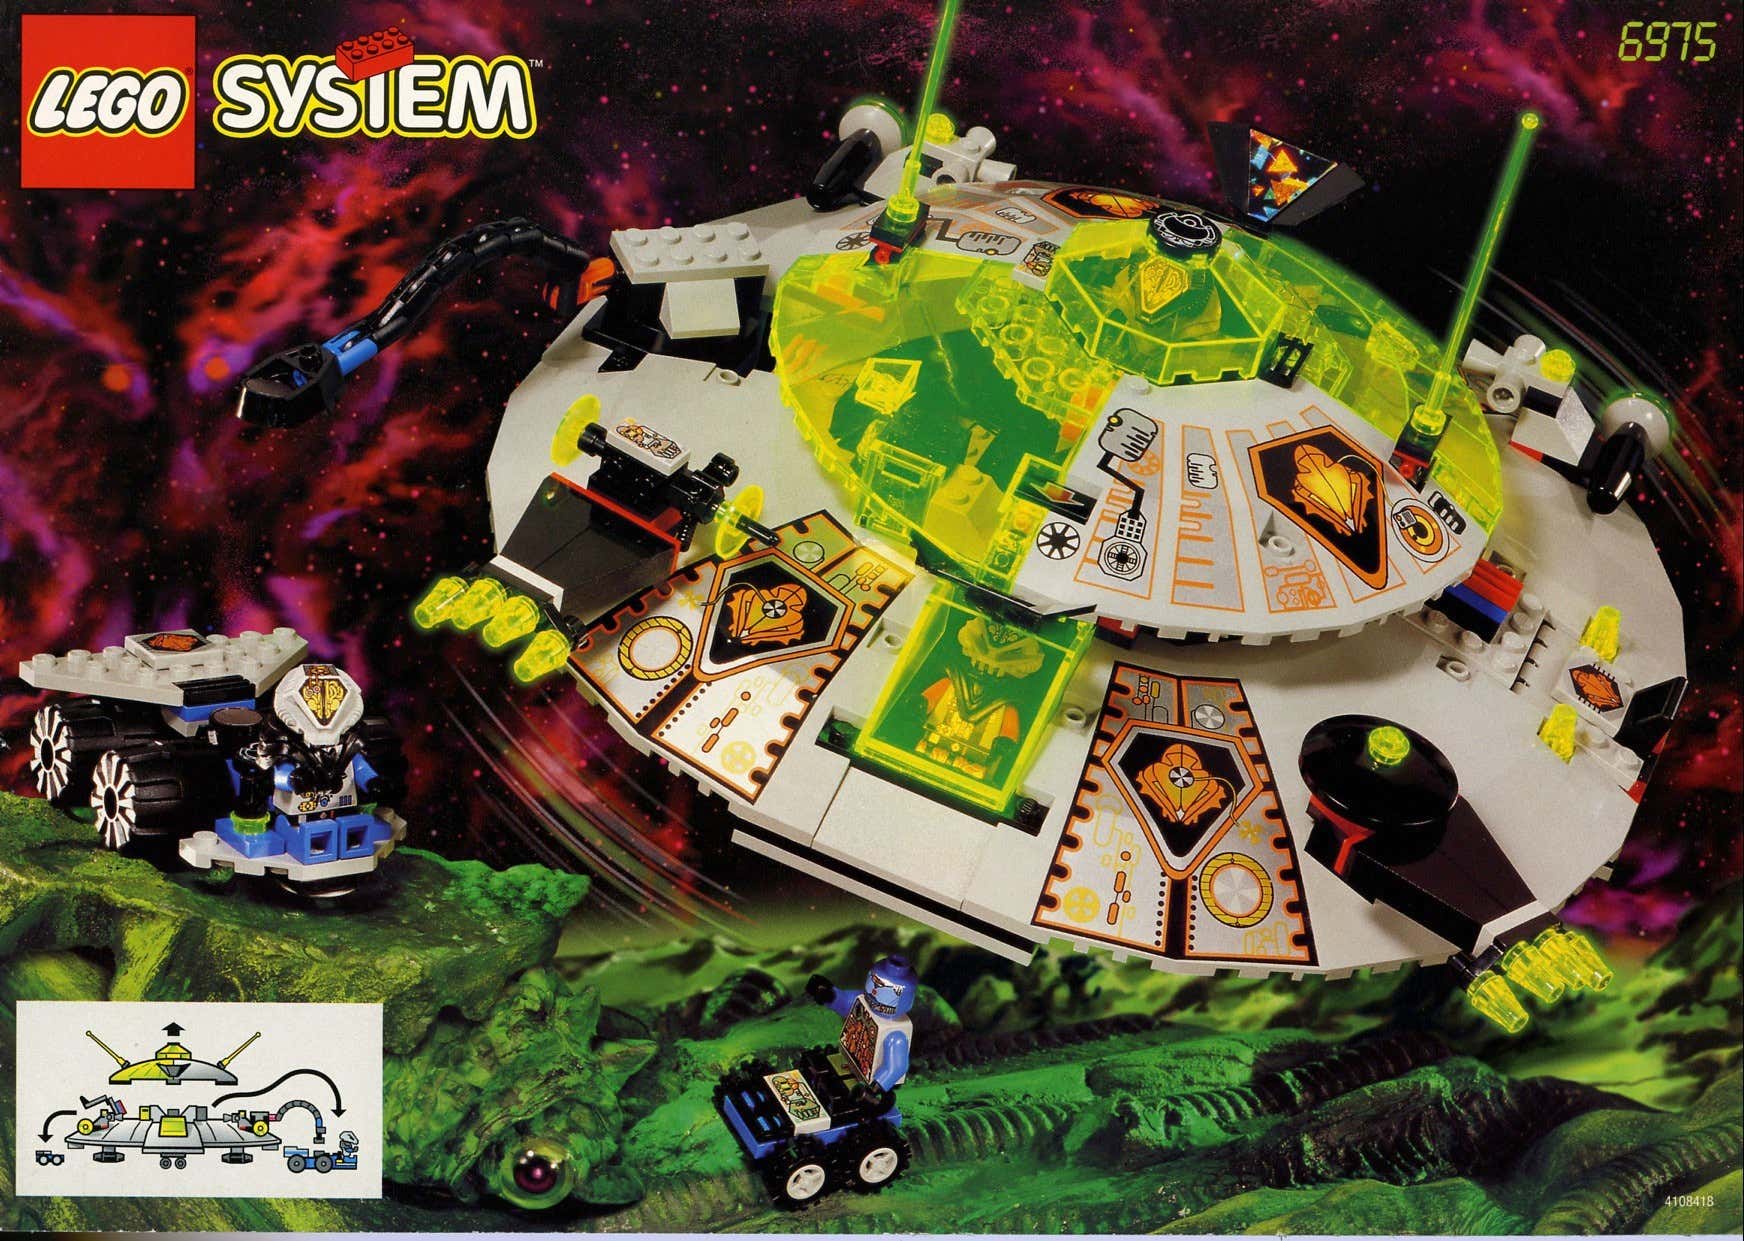 Lego'nun Klasik Uzay Çizgisinin Evrimi başlıklı makale için resim